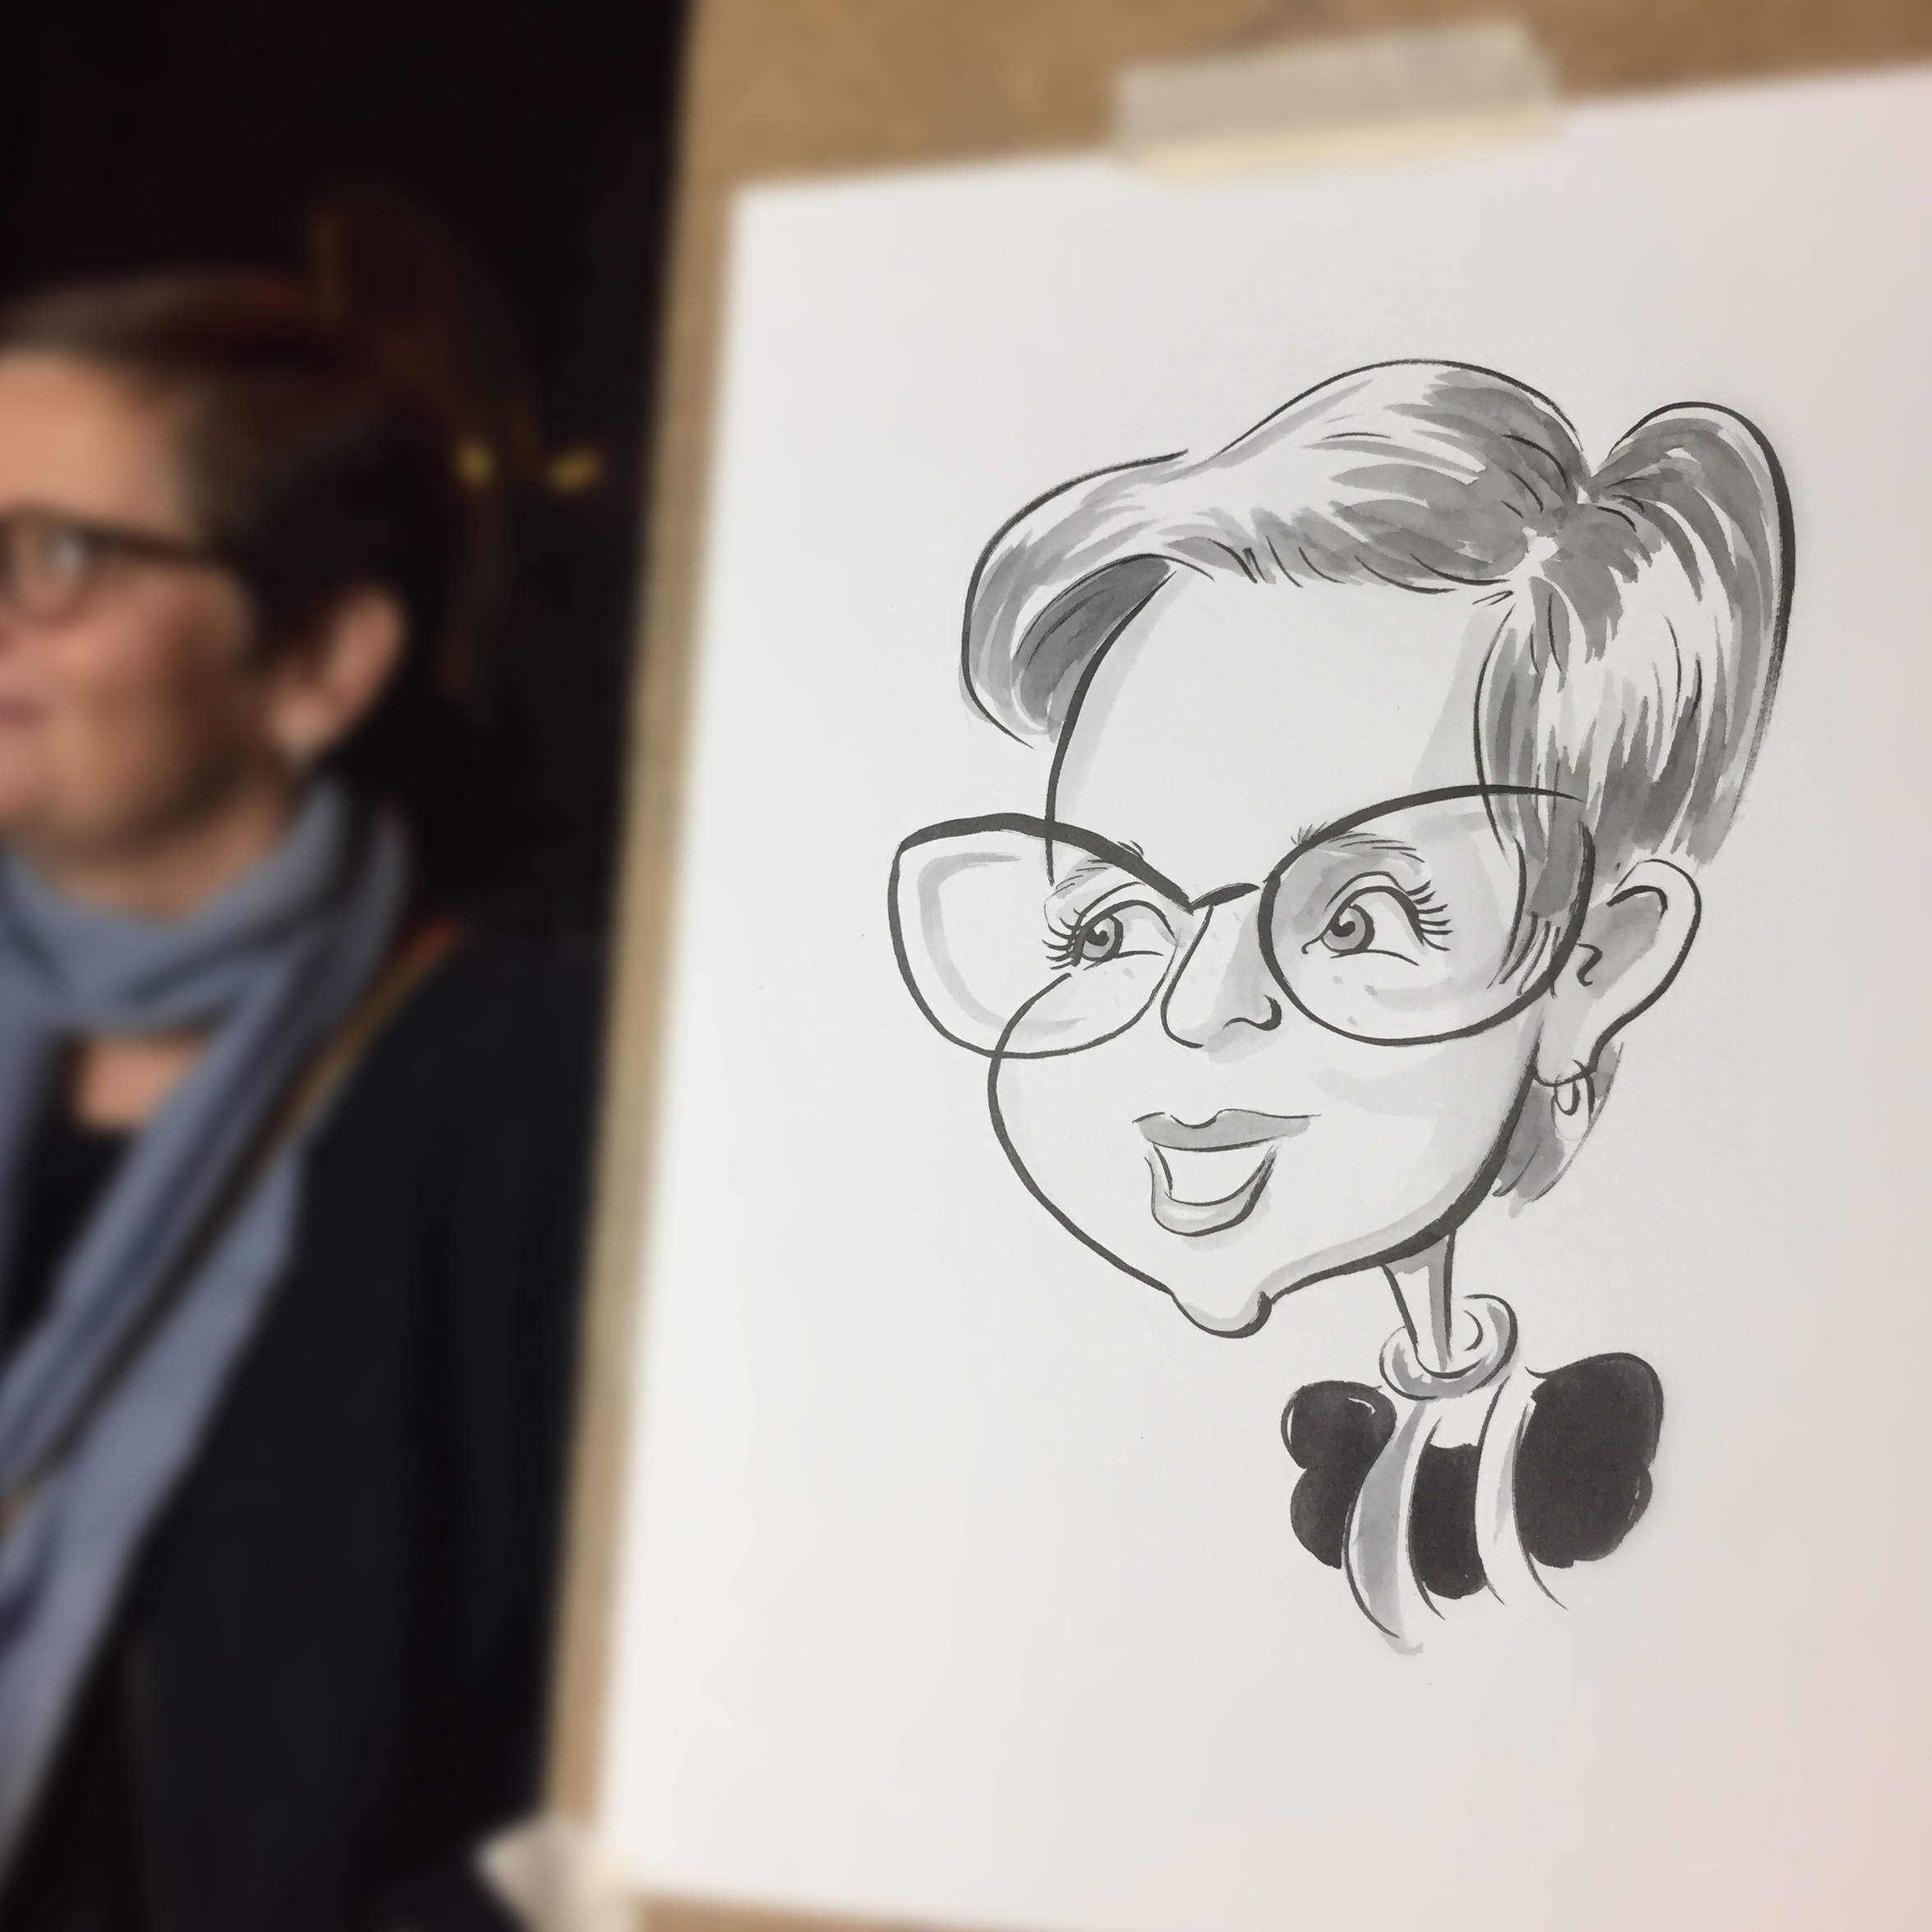 Le caricaturiste événementiel Abel Dan a réalisé des caricatures à Liège